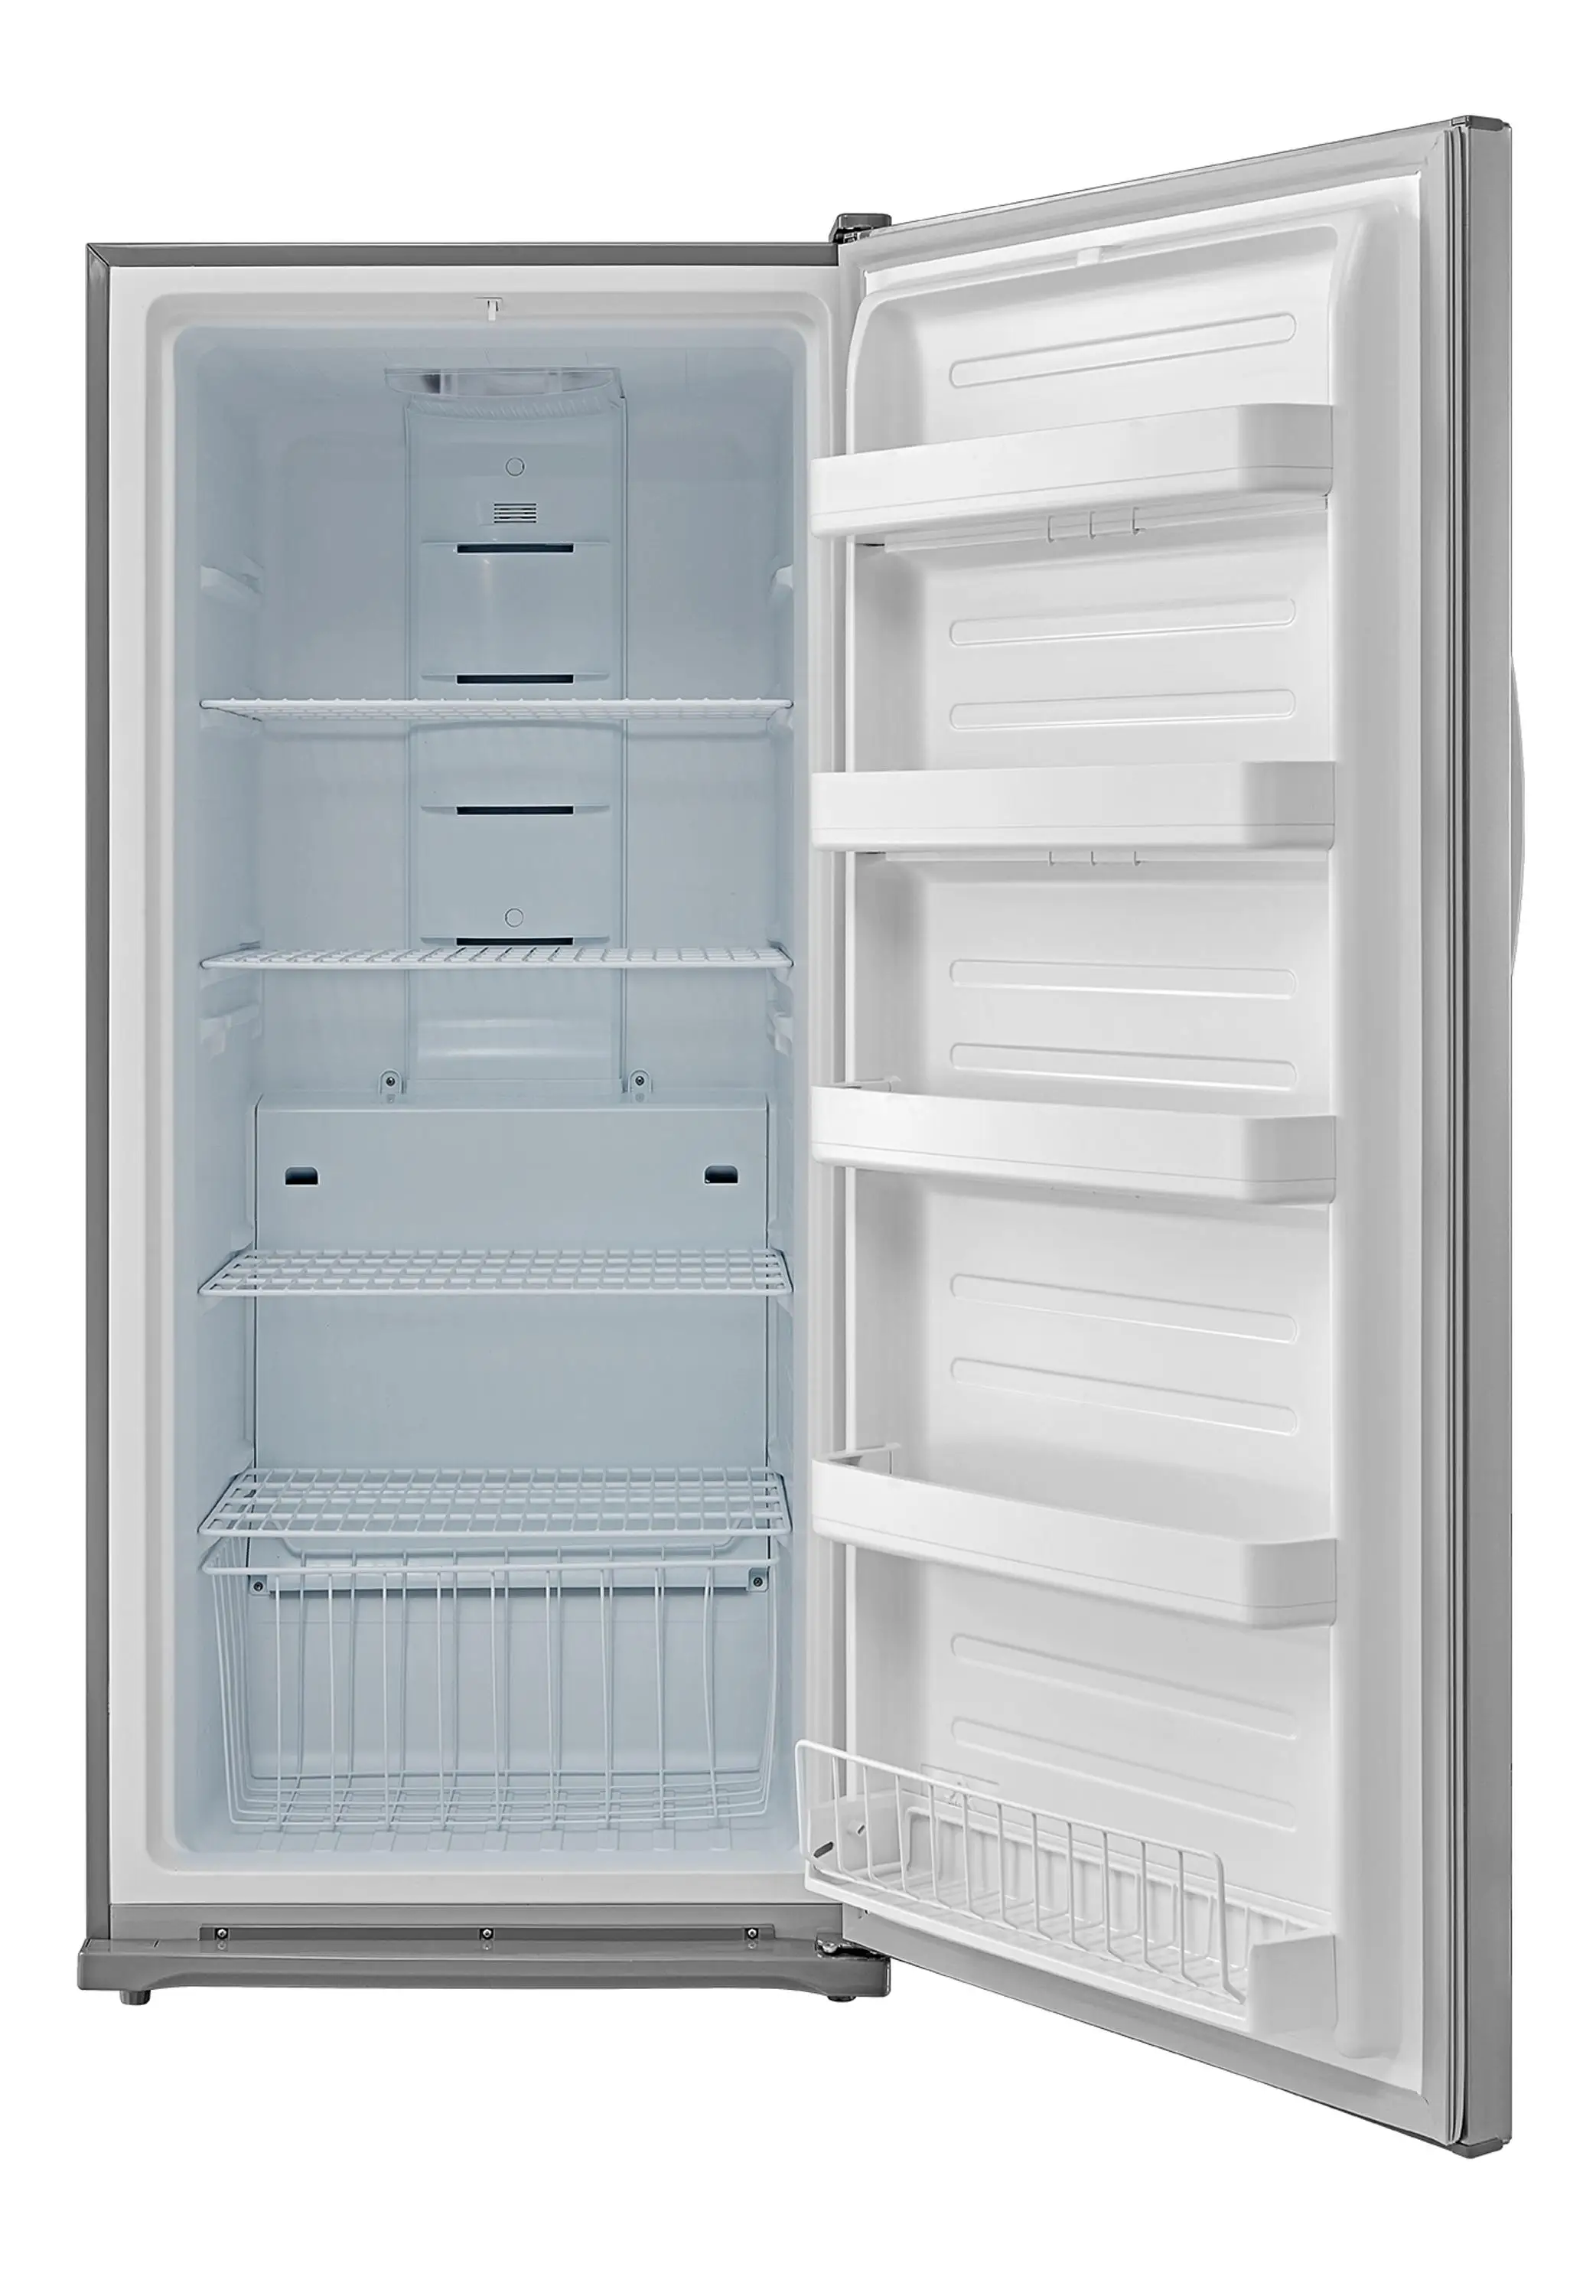 391l Stainless Steel No Frost Single Door Refrigerator Freezer - Buy ...